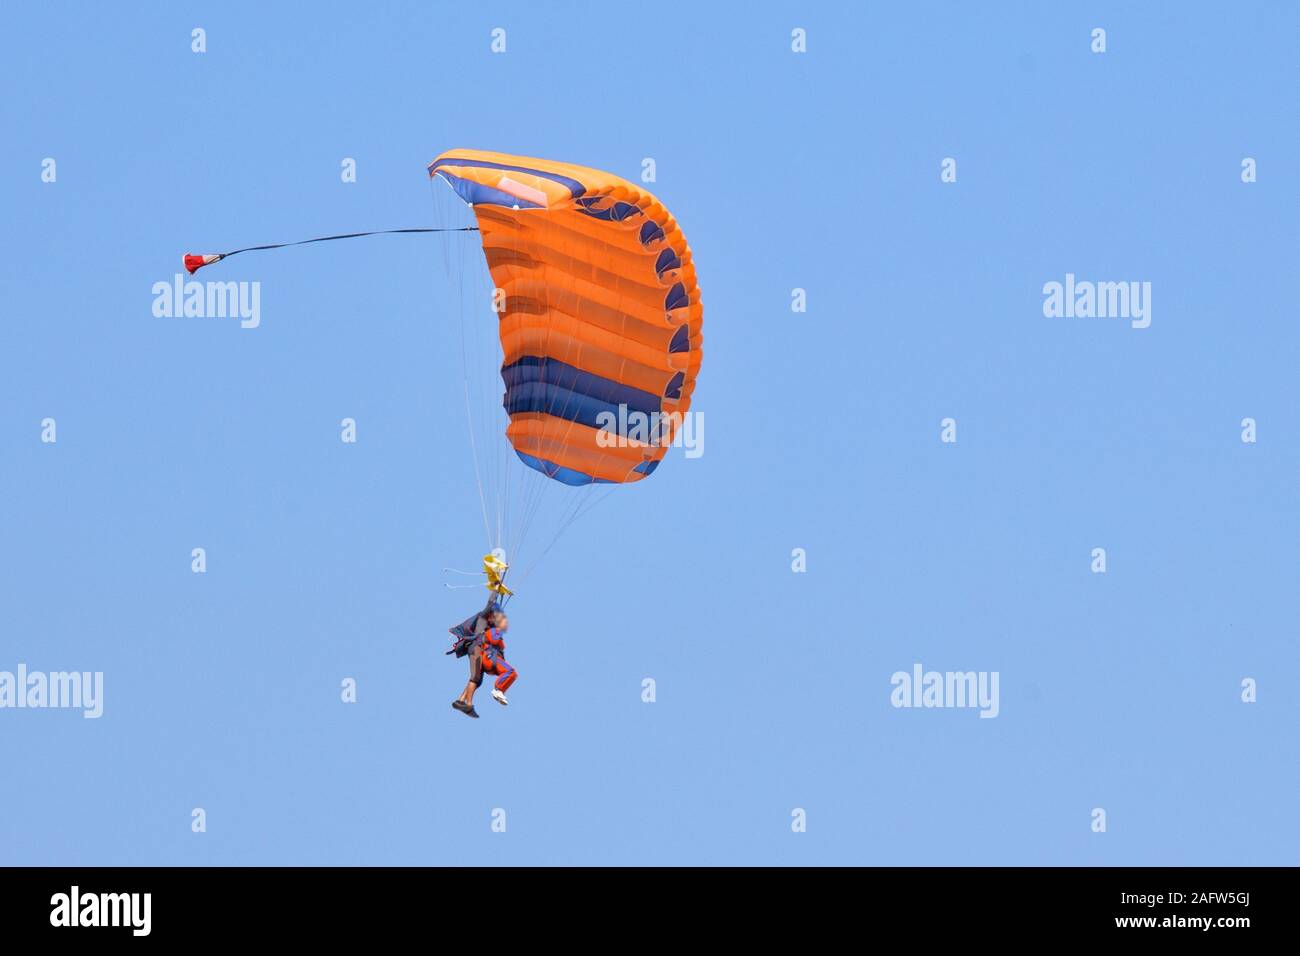 Il tandem parachute jump. Insegnante e studente volare sotto la cupola di un paracadute arancione nel cielo Foto Stock